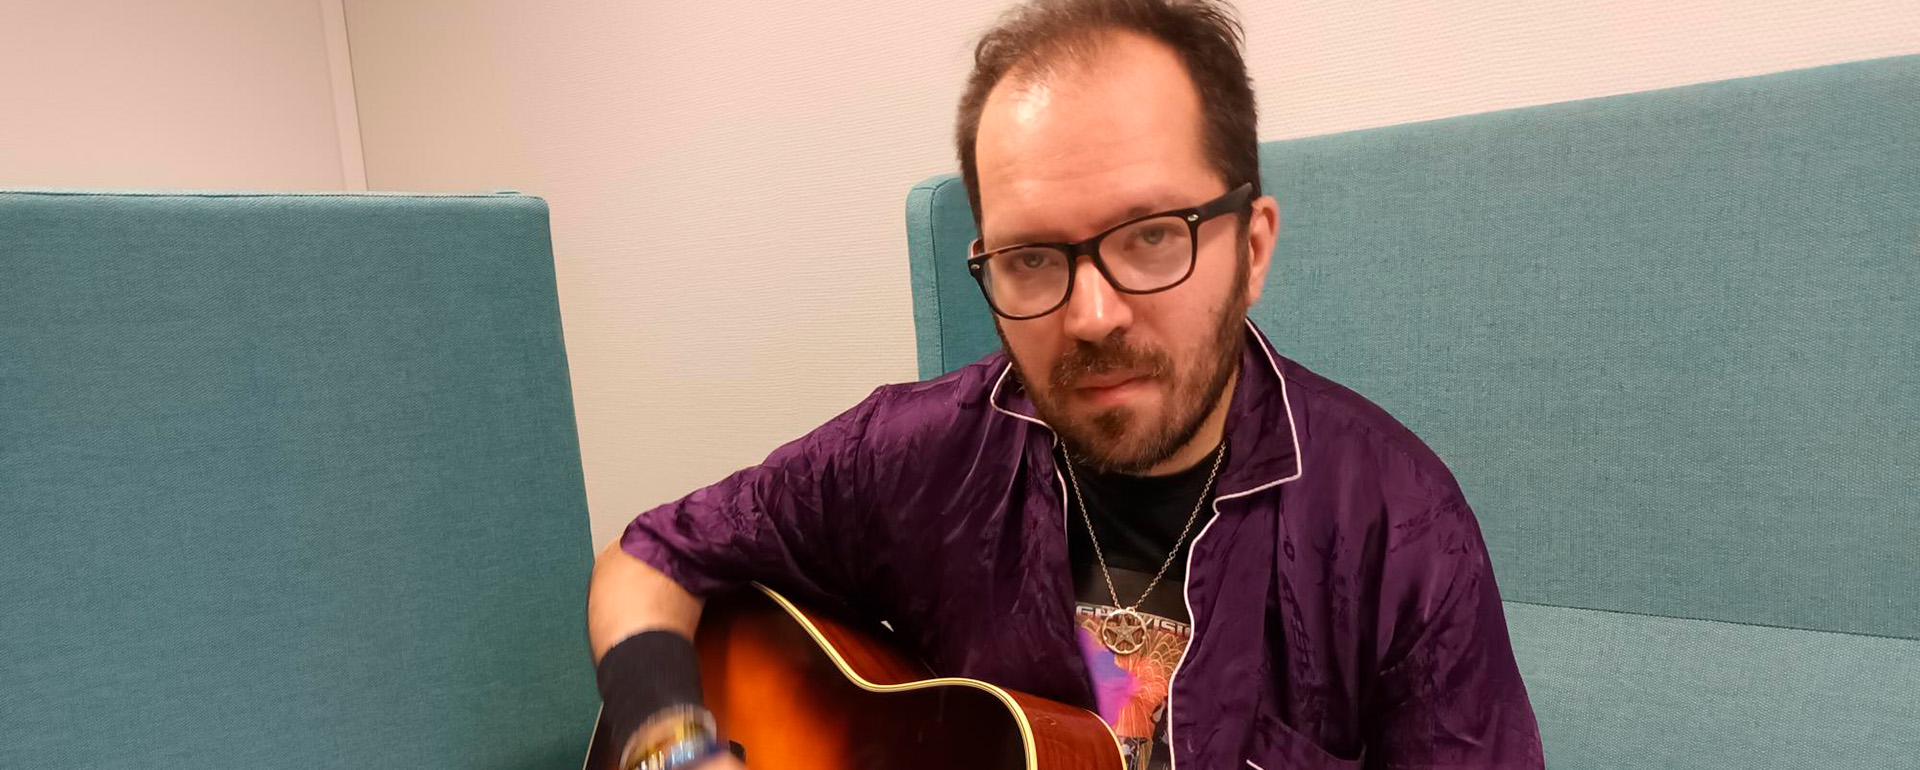 Riku Turpeinen soittaa kitaraa sohvalla.